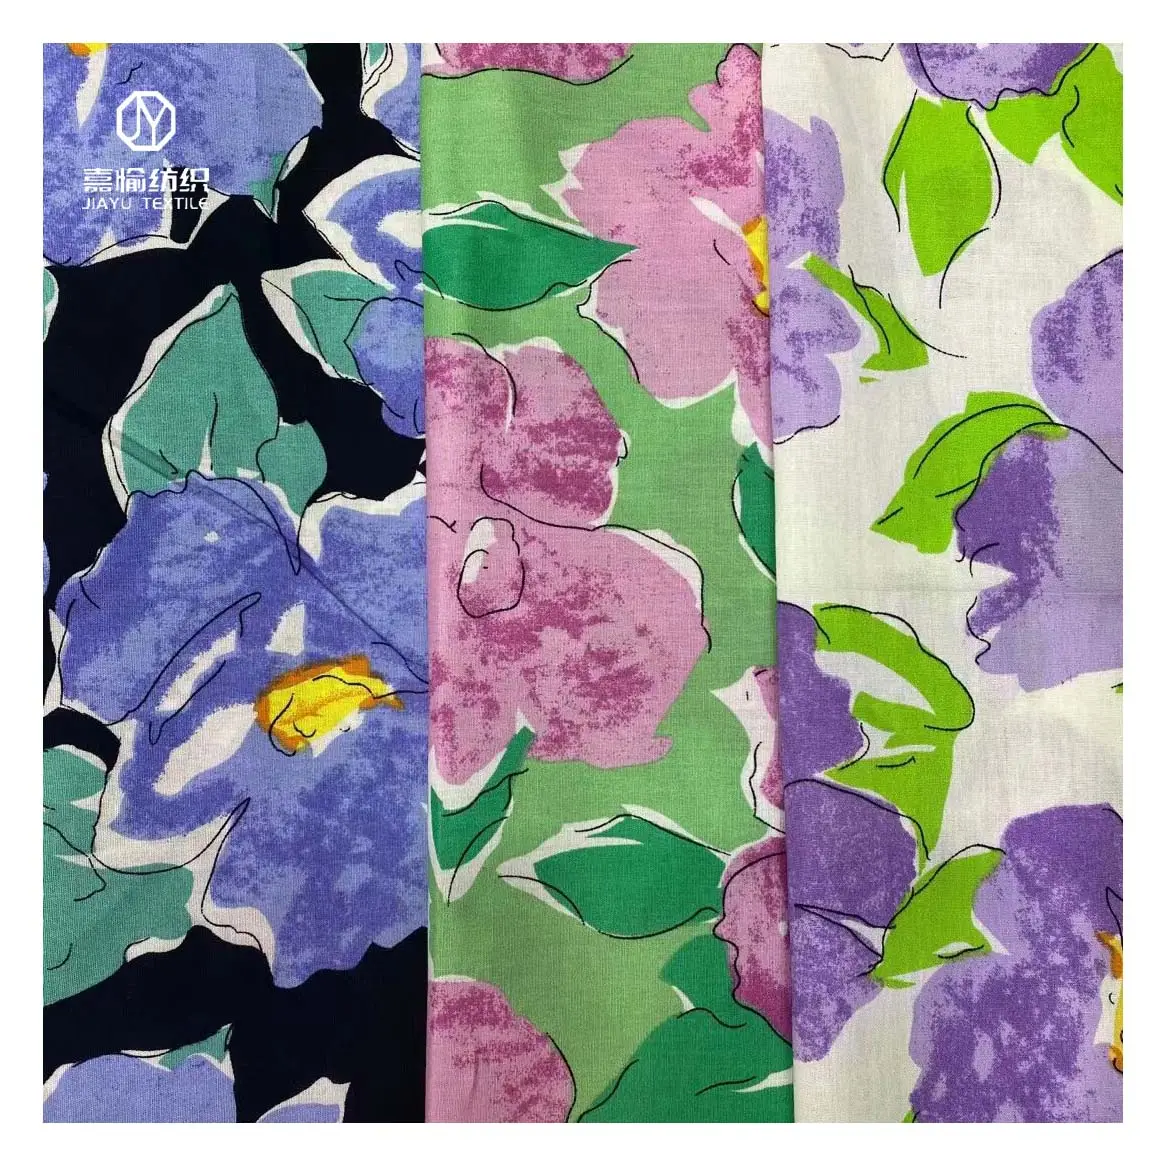 무료 샘플 패션 최신 디자인 대량 판매 꽃 인쇄 패브릭 100% 코튼 소재 대형 꽃 패턴 드레스 의류 천